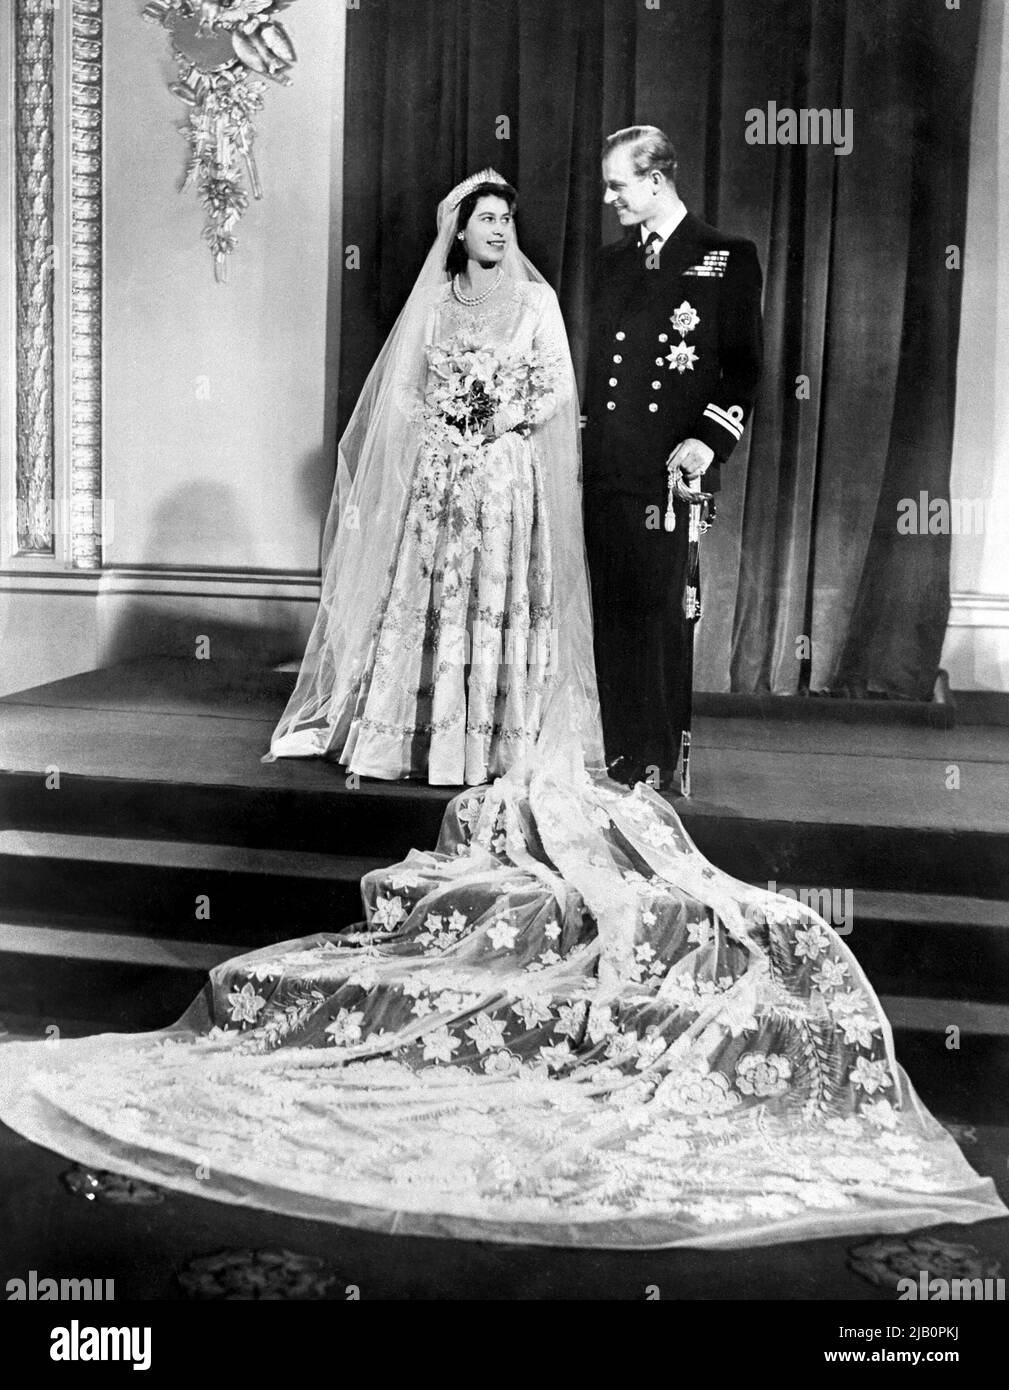 La princesa de Gran Bretaña Elizabeth (futura reina Elizabeth II) (L) y Philip, duque de Edimburgo (R) posan en su día de boda en el Palacio de Buckingham en Londres el 20 de noviembre de 1947 Foto de stock